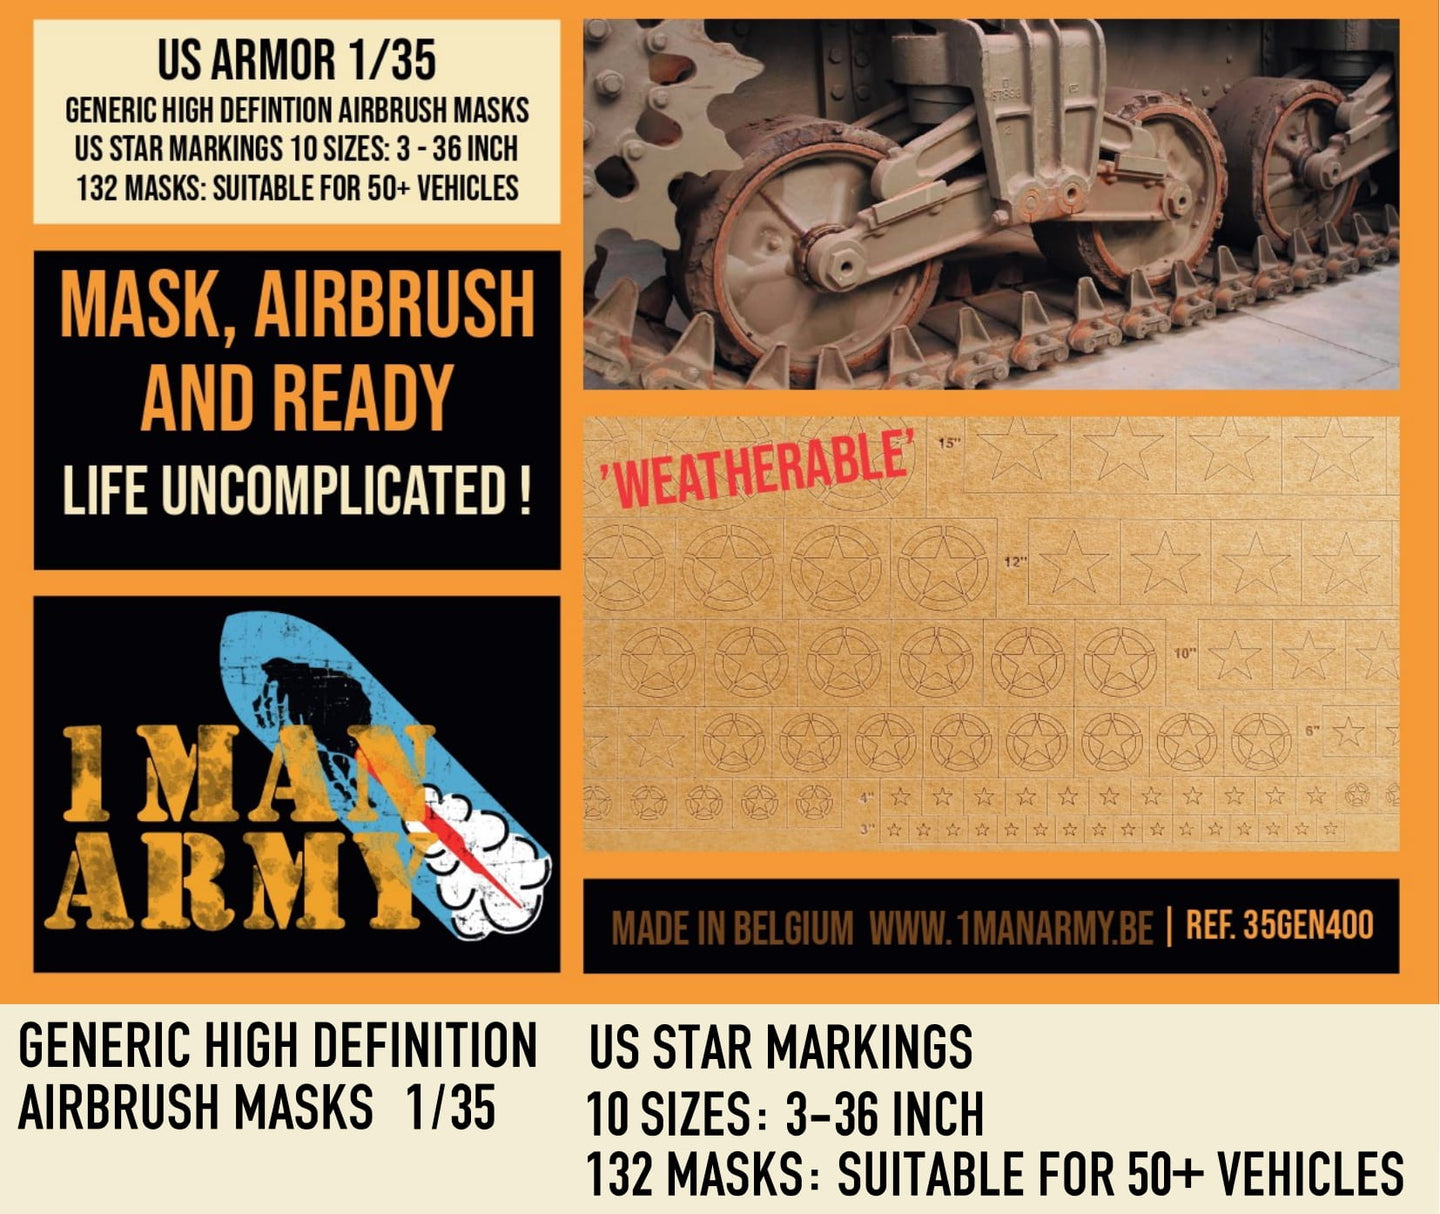 1ManArmy 1/35 US Star Markings 3-36 in Paint Masks 35GEN400